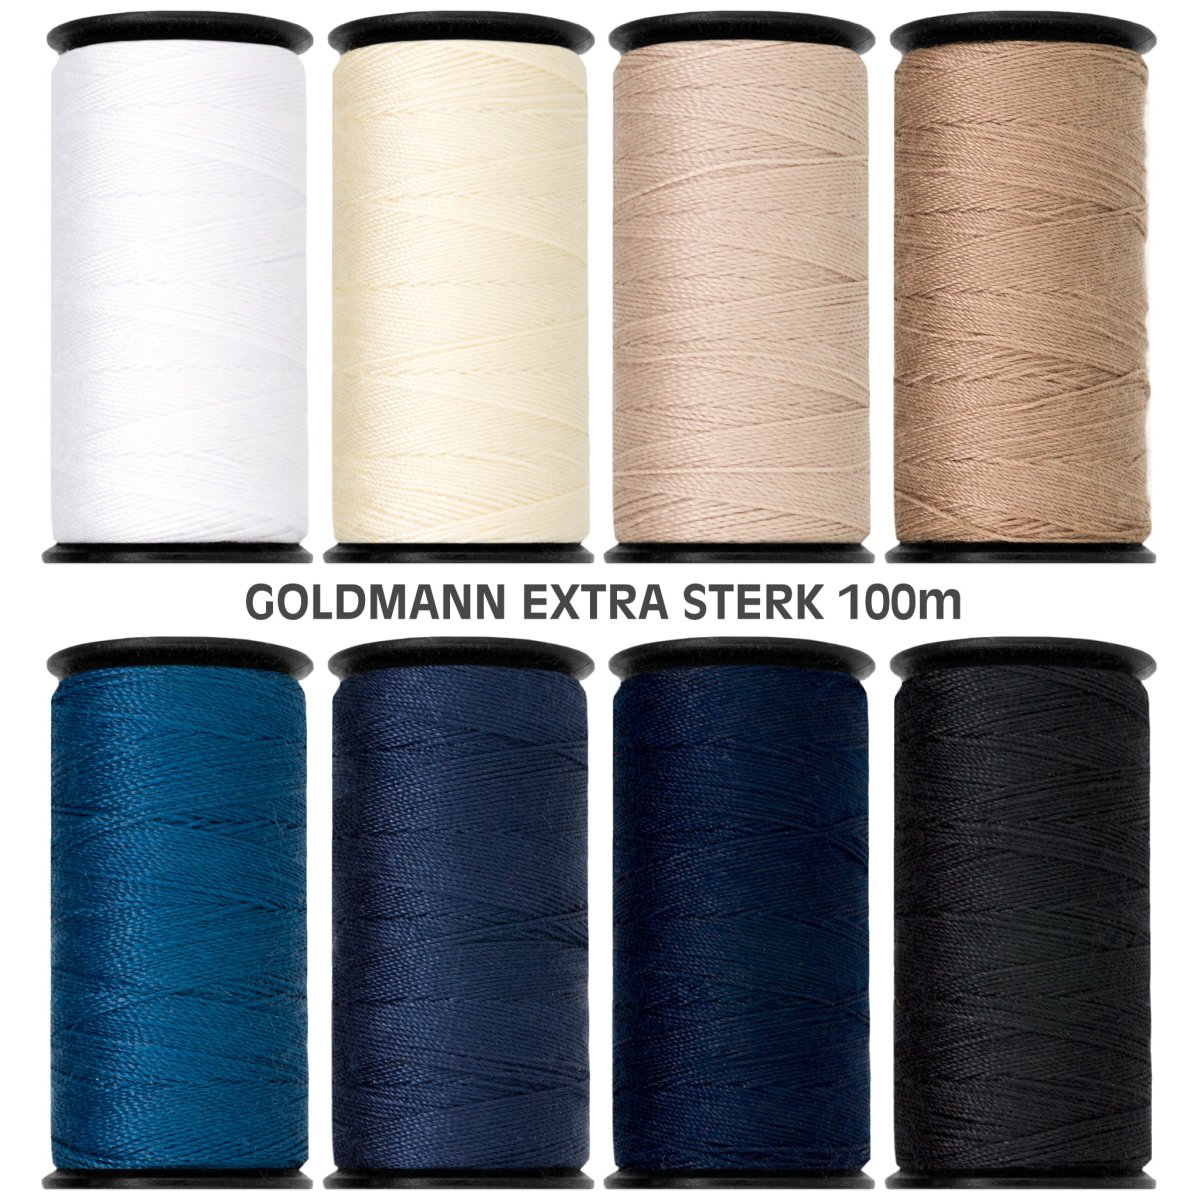 Goldmann extra sterk set beige - blauw naaigaren GOLDMANN-STERK-SET-BEIGE.BLAUW 2410 - Fourniturenkraam.nl